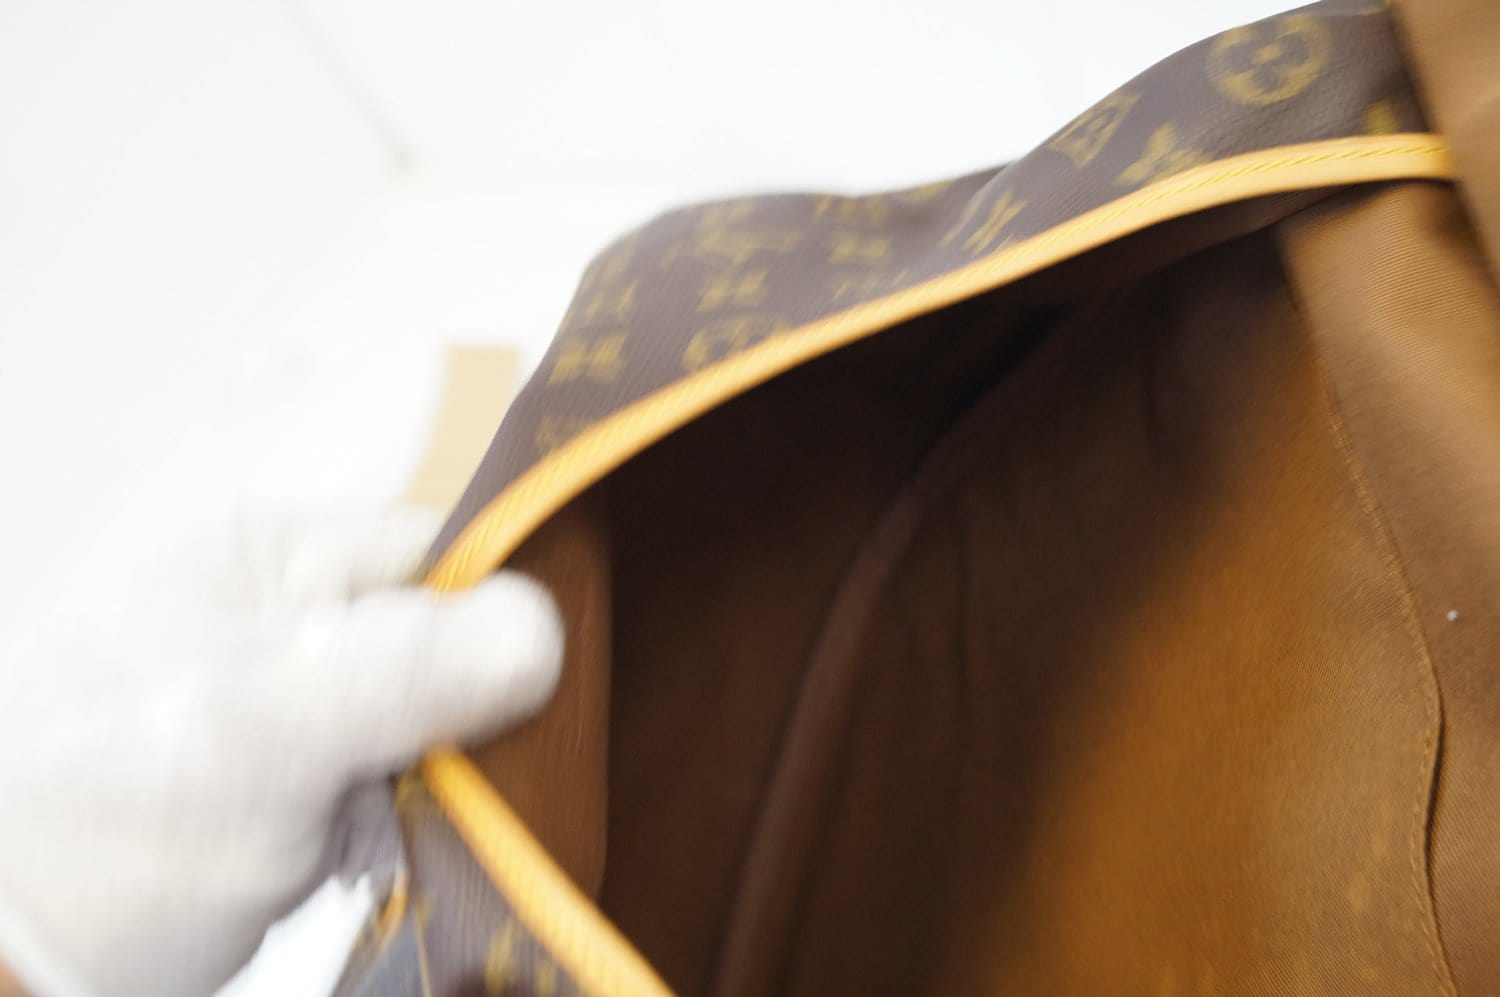 LOUIS VUITTON Saumur 35 Shoulder Bag – Chanel Vuitton